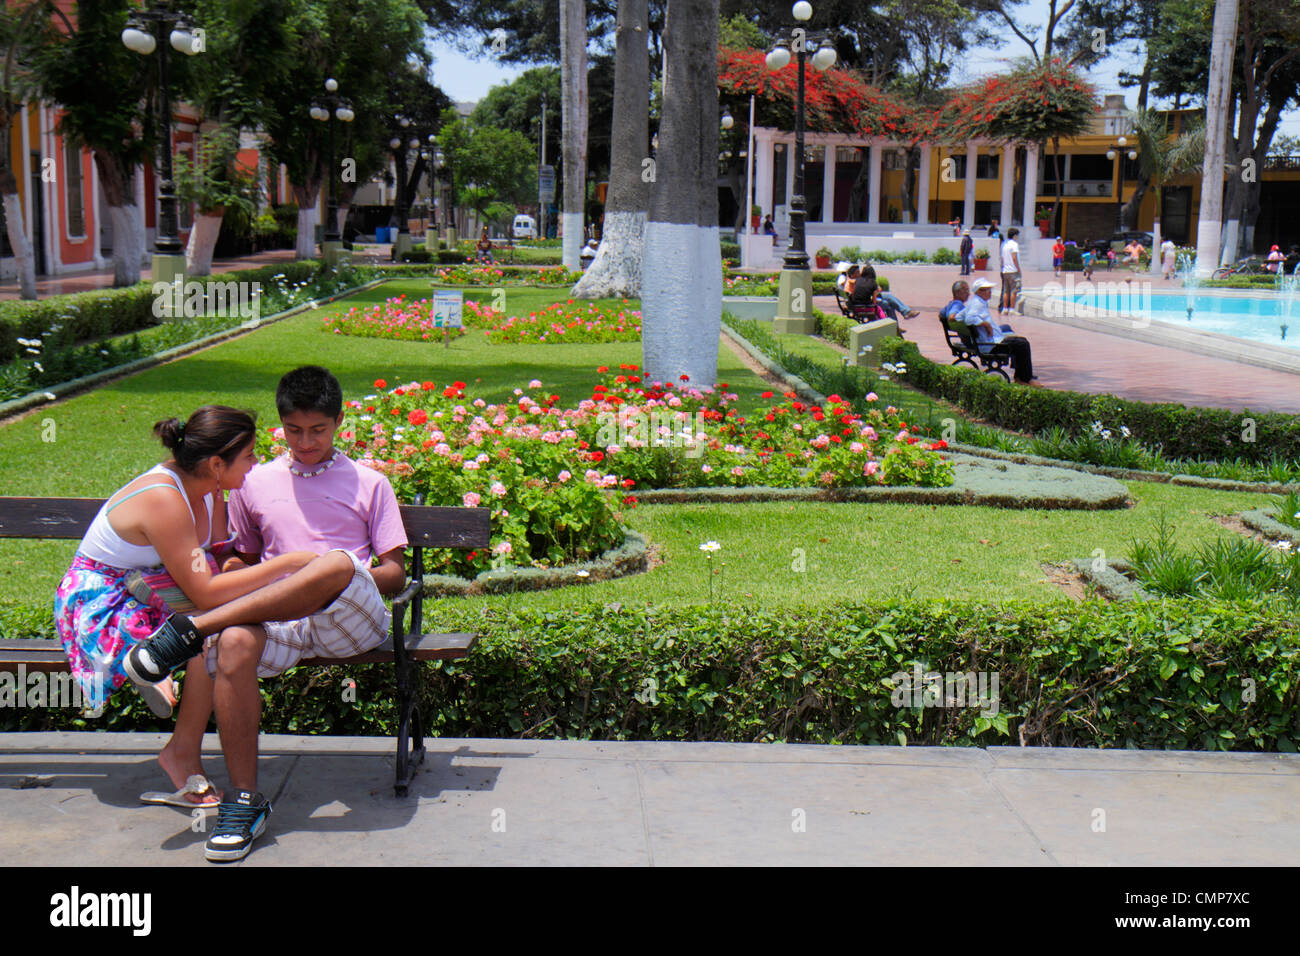 Lima Perù, Distretto Barranco, Parque Municipal, parco urbano, spazio aperto, giardino, letto di fiori, albero, fontana, panca, tempo libero, ragazzi ispanici, maschio, ragazze ragazza, voi Foto Stock